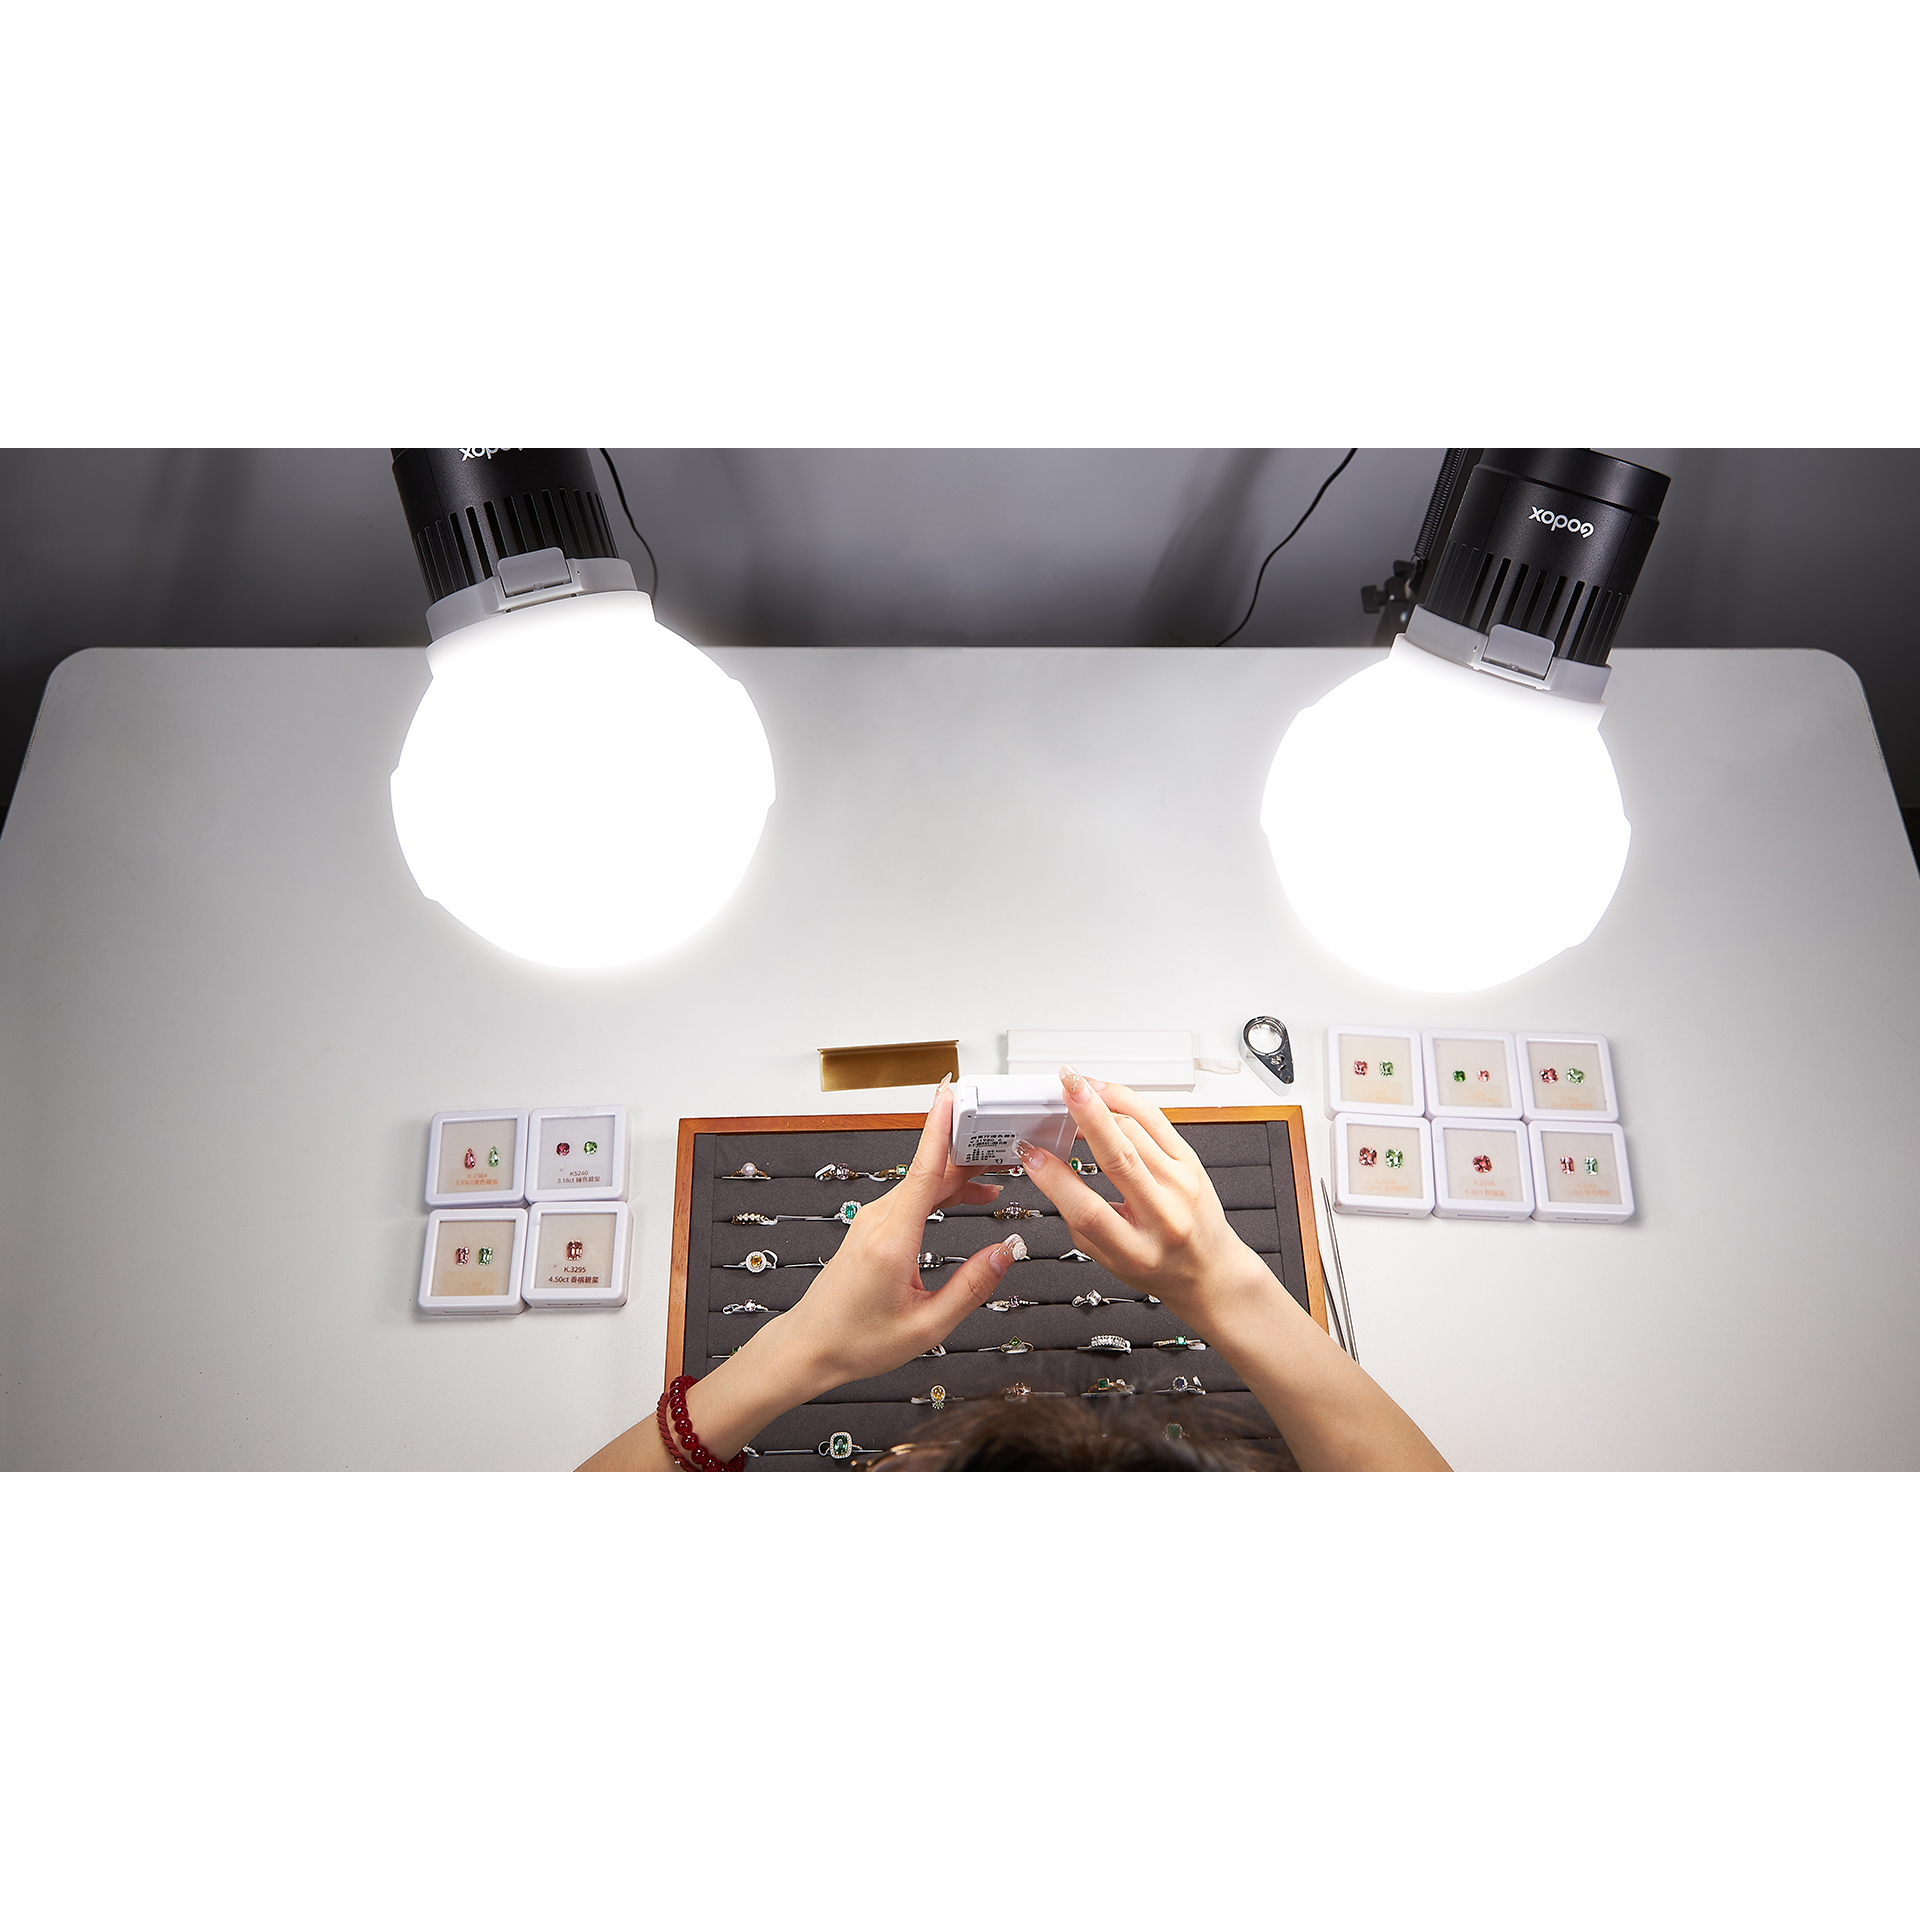 картинка Комплект светодиодных осветителей Godox Litemons LC30D-K1 настольный из Постоянный свет от магазина Mif-Bond